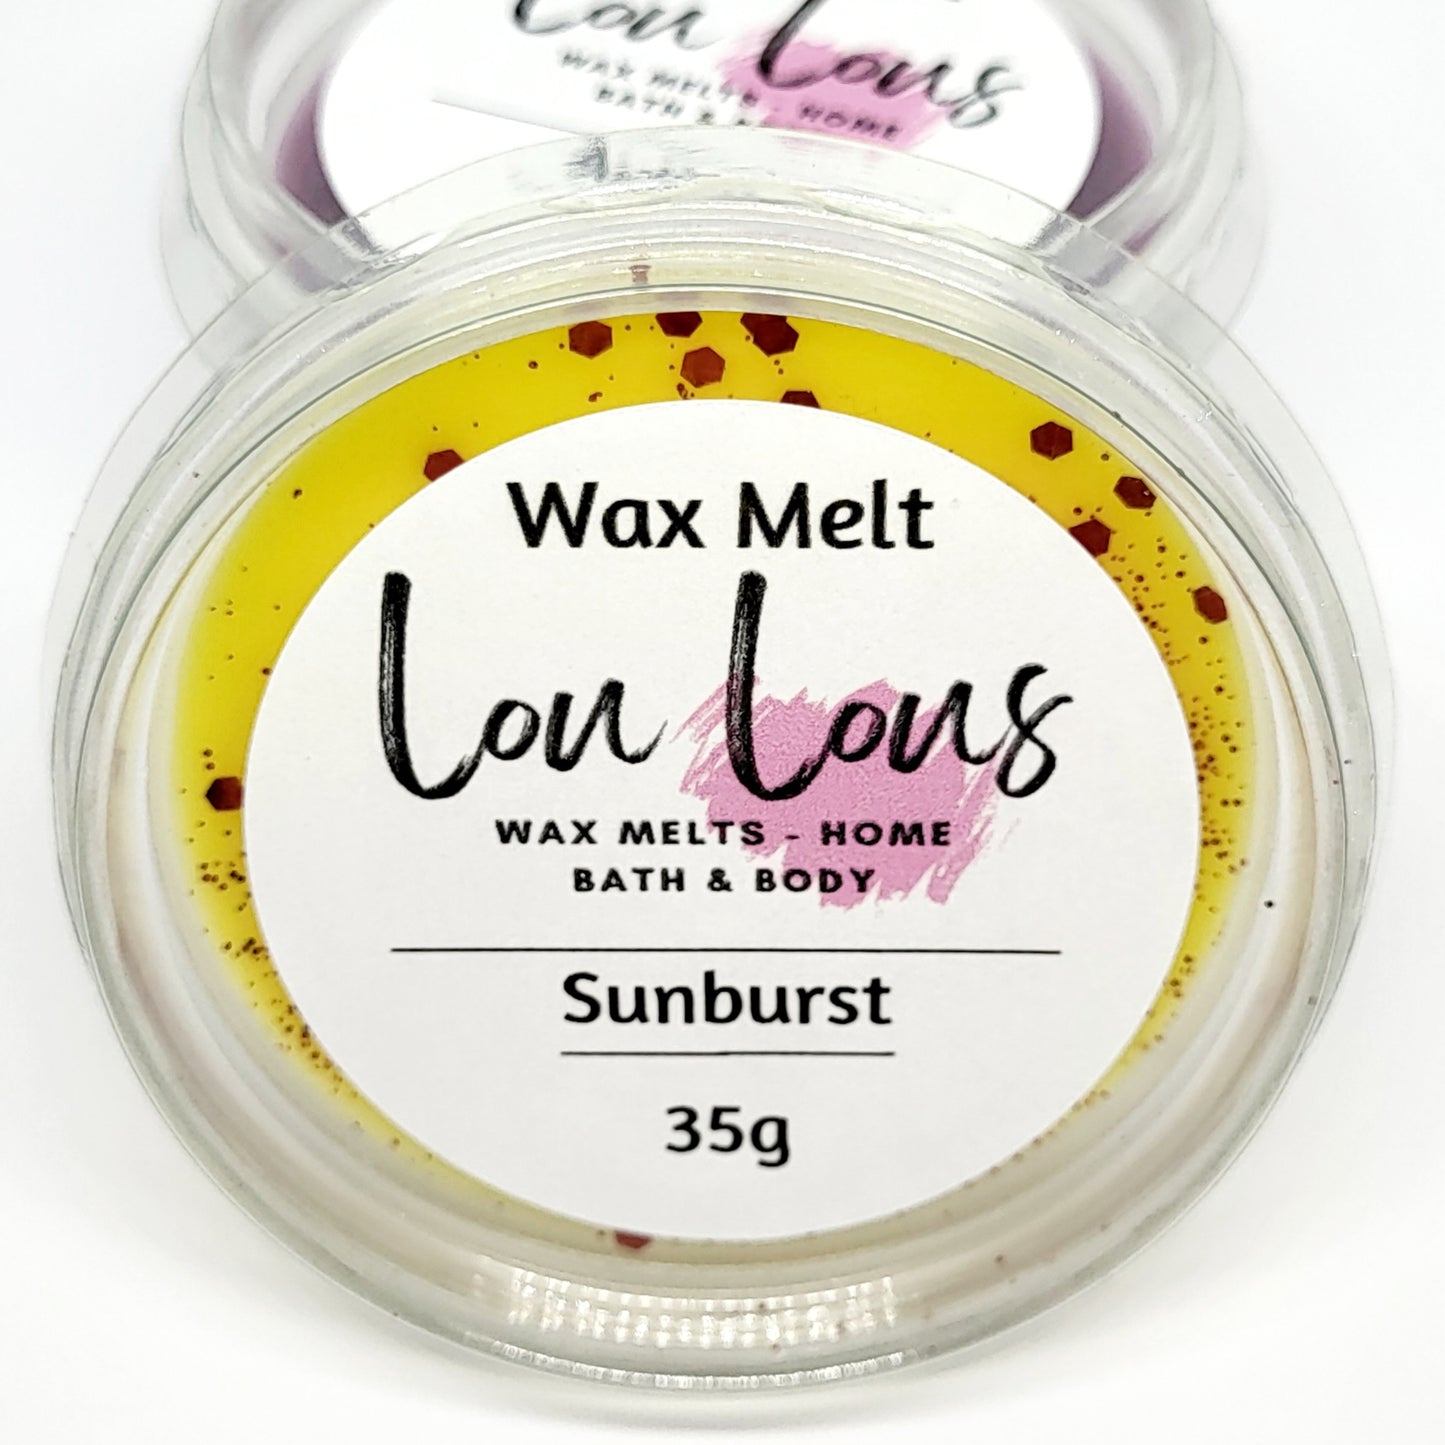 Sunburst Wax Melt Pot